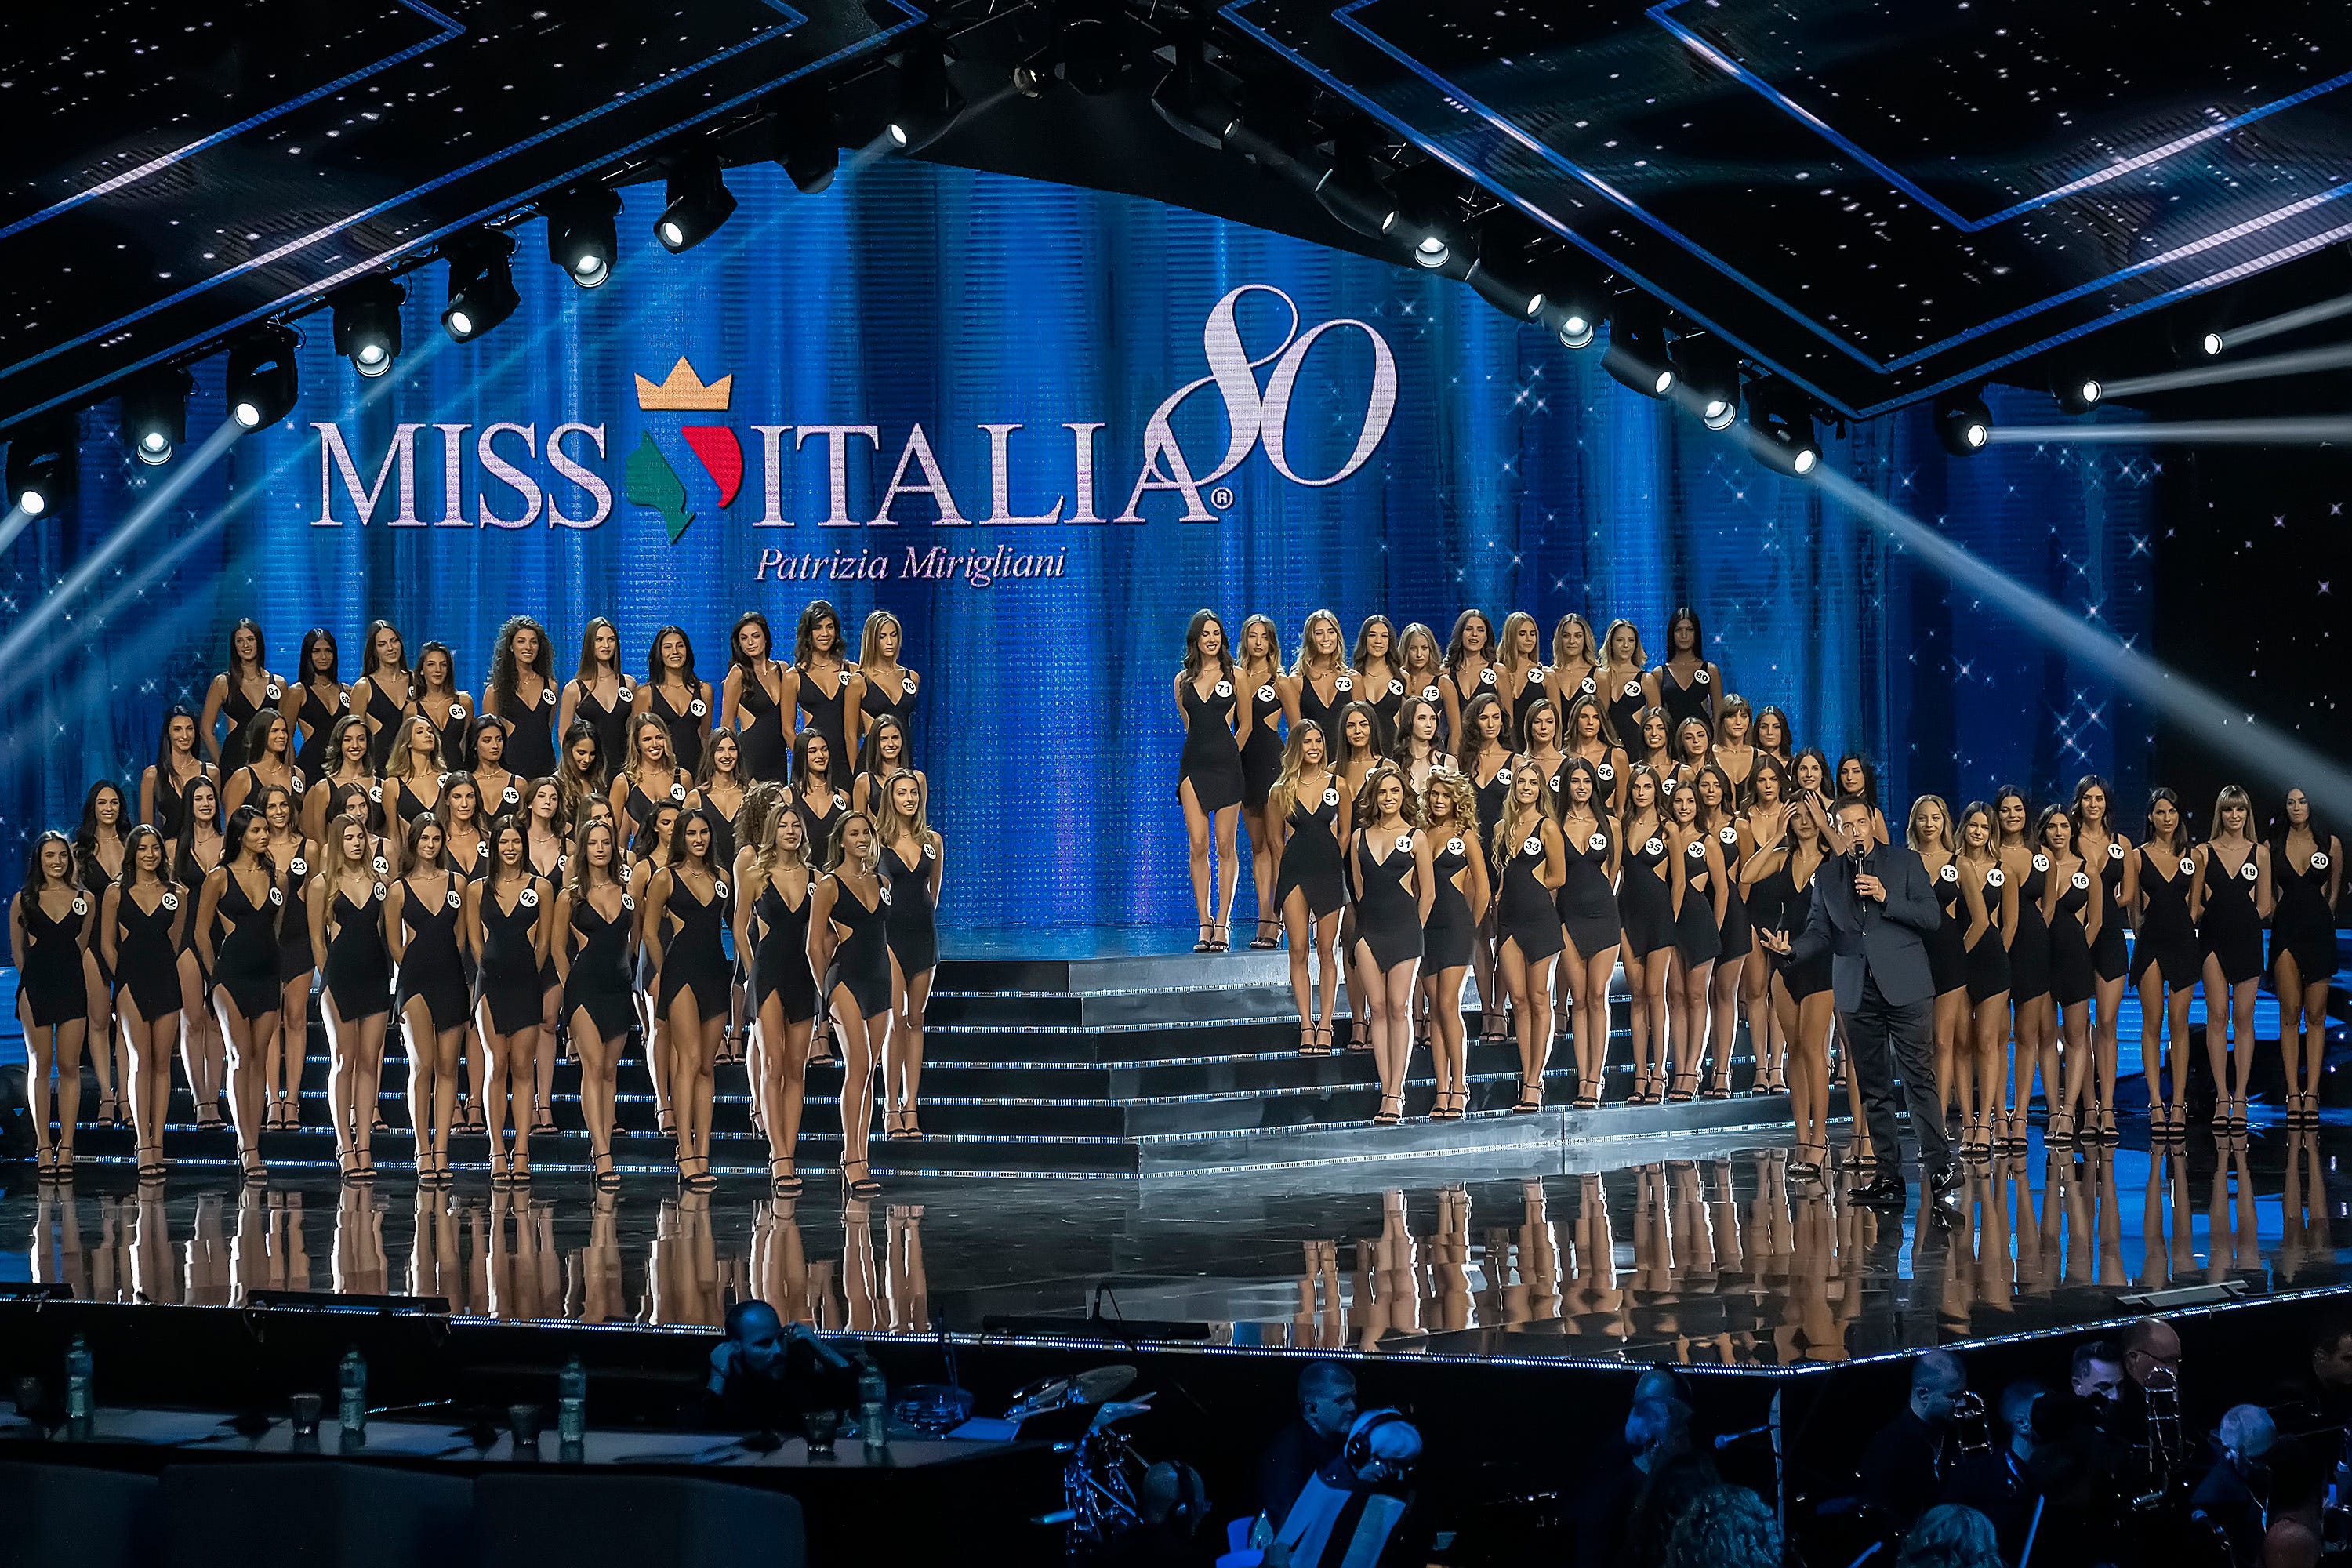 Die Teilnehmerinnen des Miss Italia 2019-Wettbewerbs stehen in Reihen auf einer Bühne.